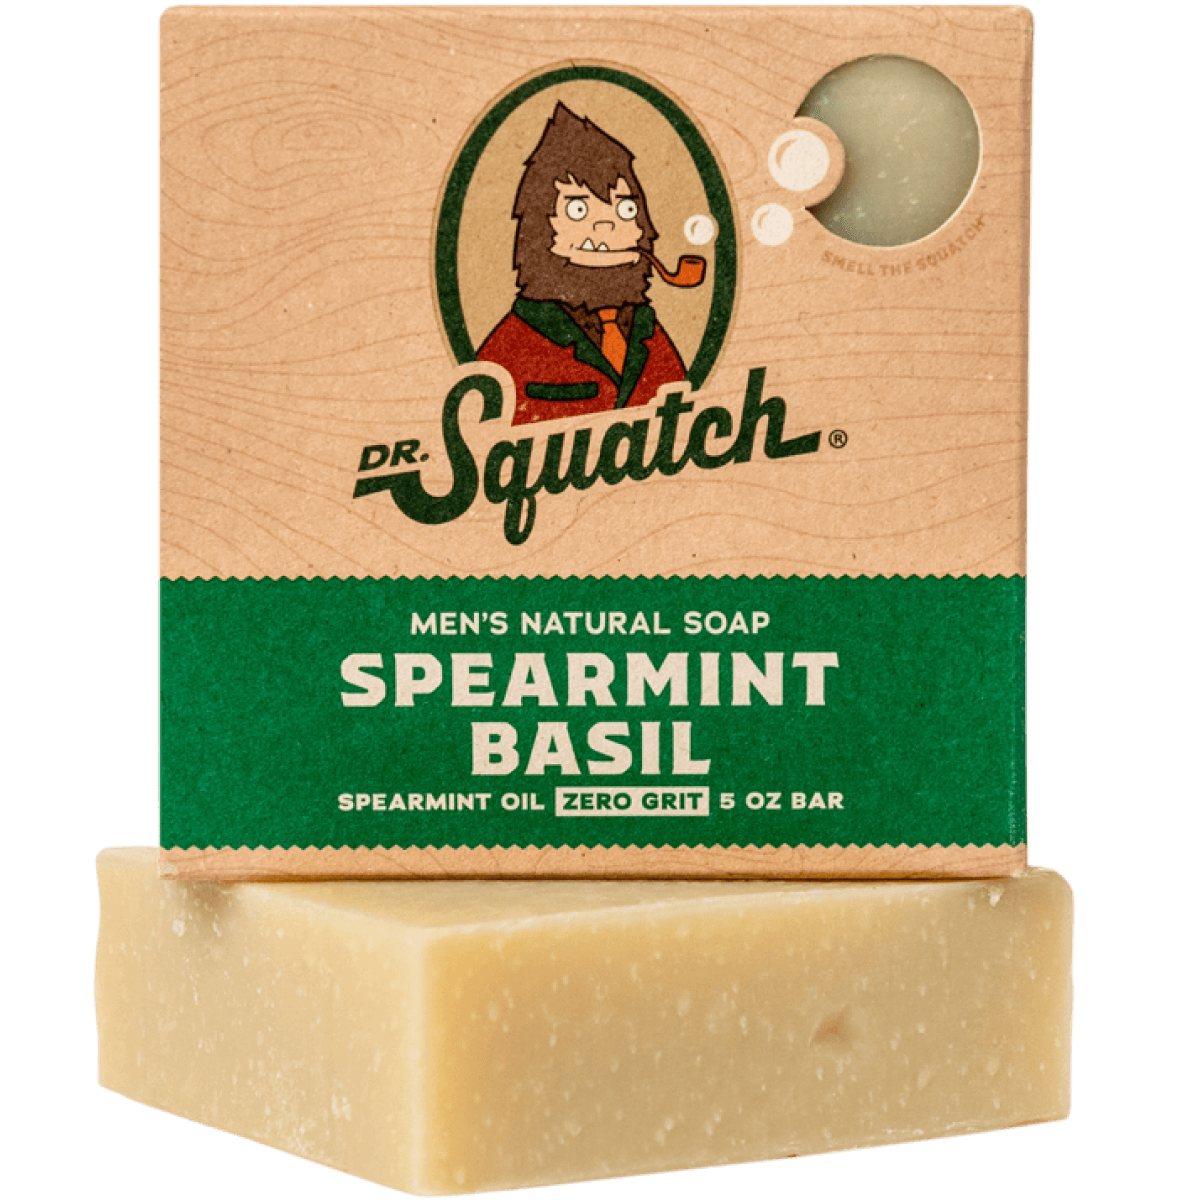 Dr. Squatch Men's Natural Soap Spearmint Basil 5oz Bar – Spa & Lifestyle  Store at Cross Gates